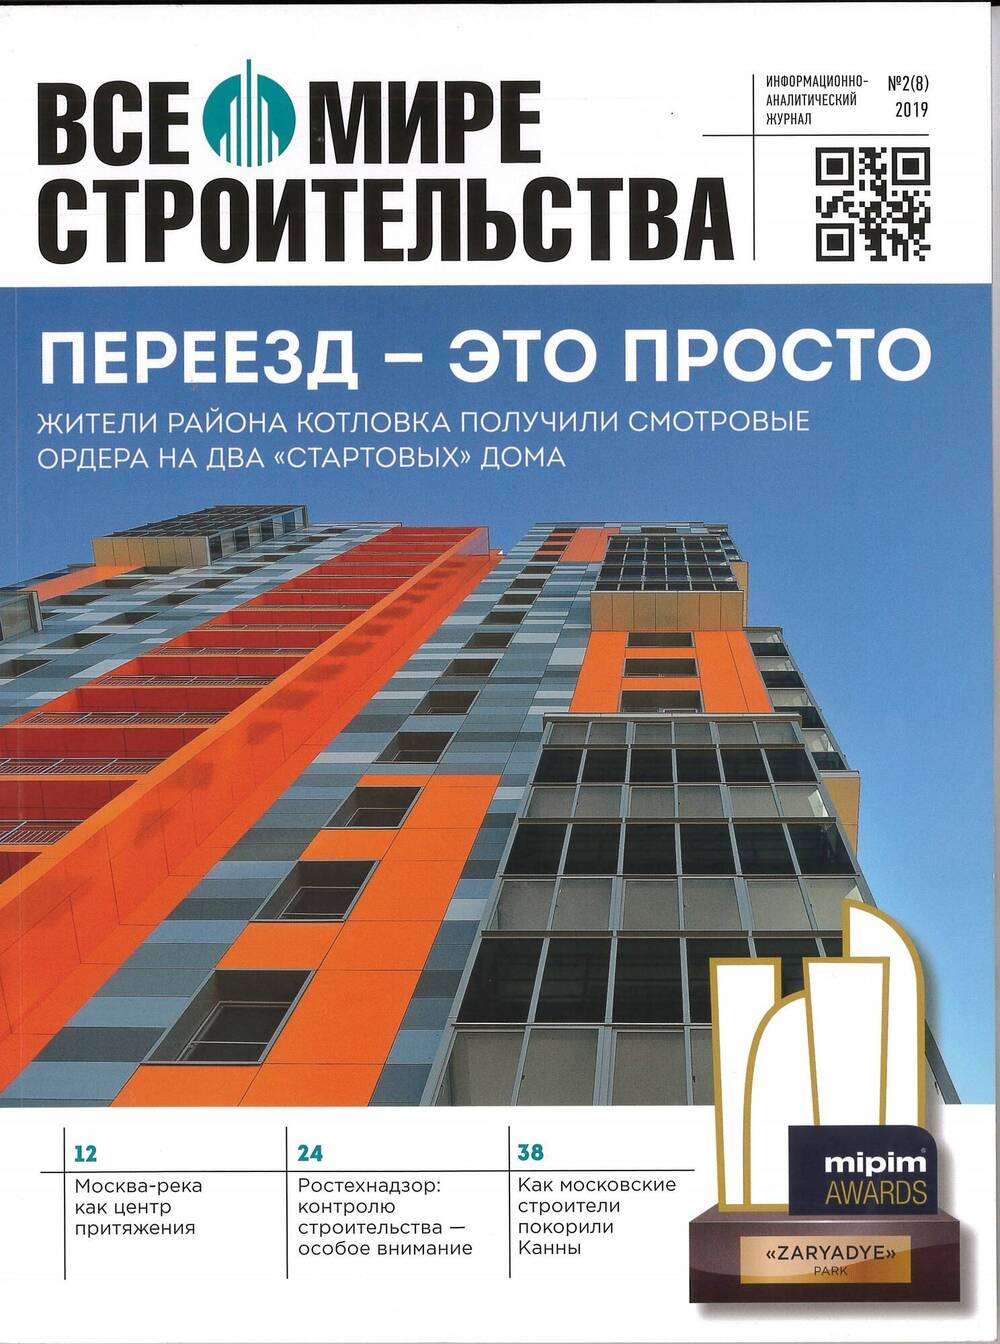 Все о мире строительства : информационно-аналитический журнал. N 2(8) 2019 год.